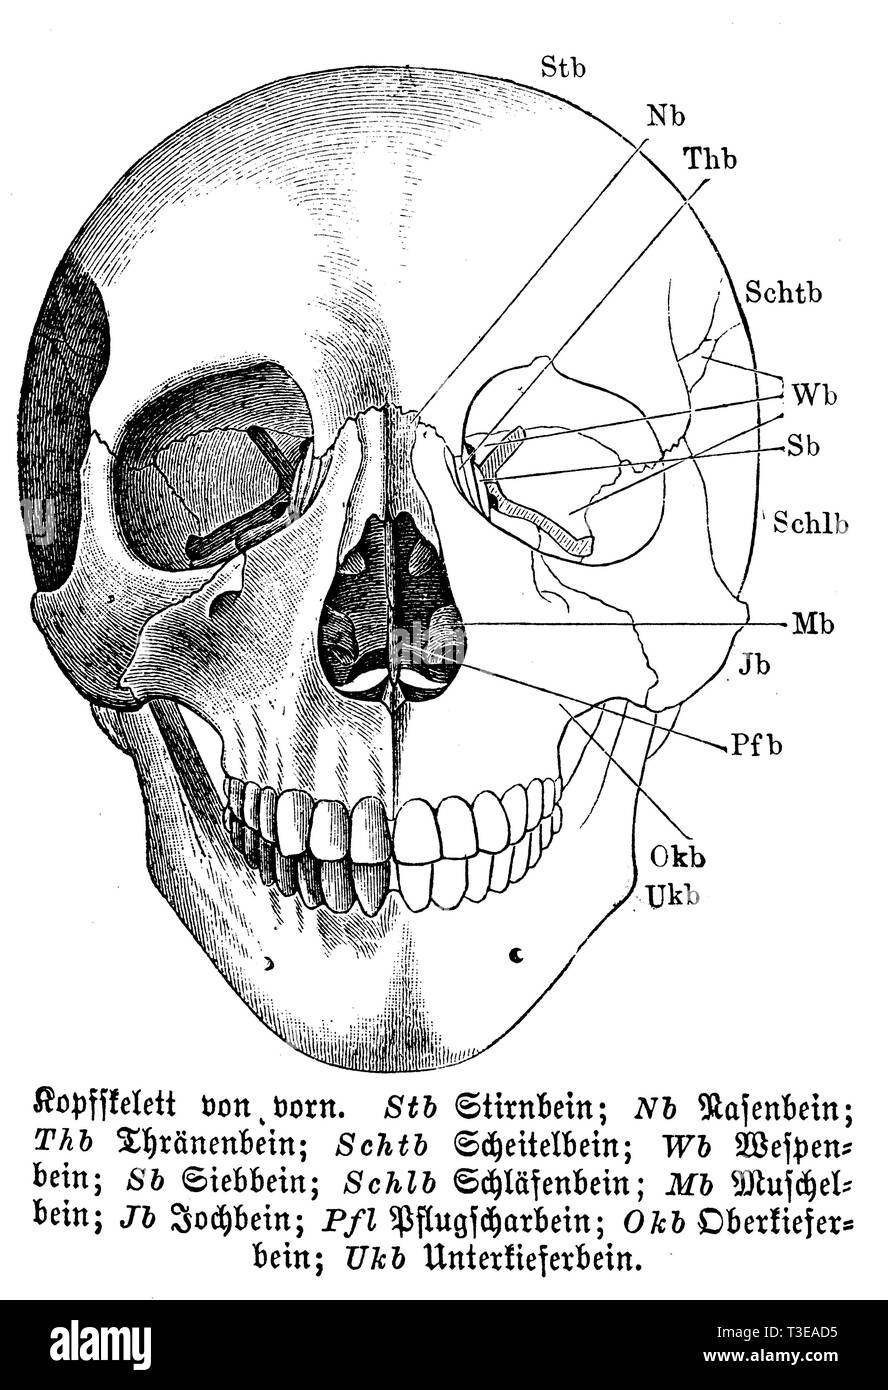 Umano: scheletro di testa dalla parte anteriore. Btb) Fronte osso; Nb) Tagliaerba osso; Thb) osso lacrimale; Schtb osso parietale; Wb) wasp osso; Sb) sinusite etmoide osso; Schlb) osso temporale; Mb) conch osso; Jb) osso zigomatico; Pfl) vomere osso; Okb) ganascia superiore osso; Ukb) dell'osso mandibolare, anonym Foto Stock